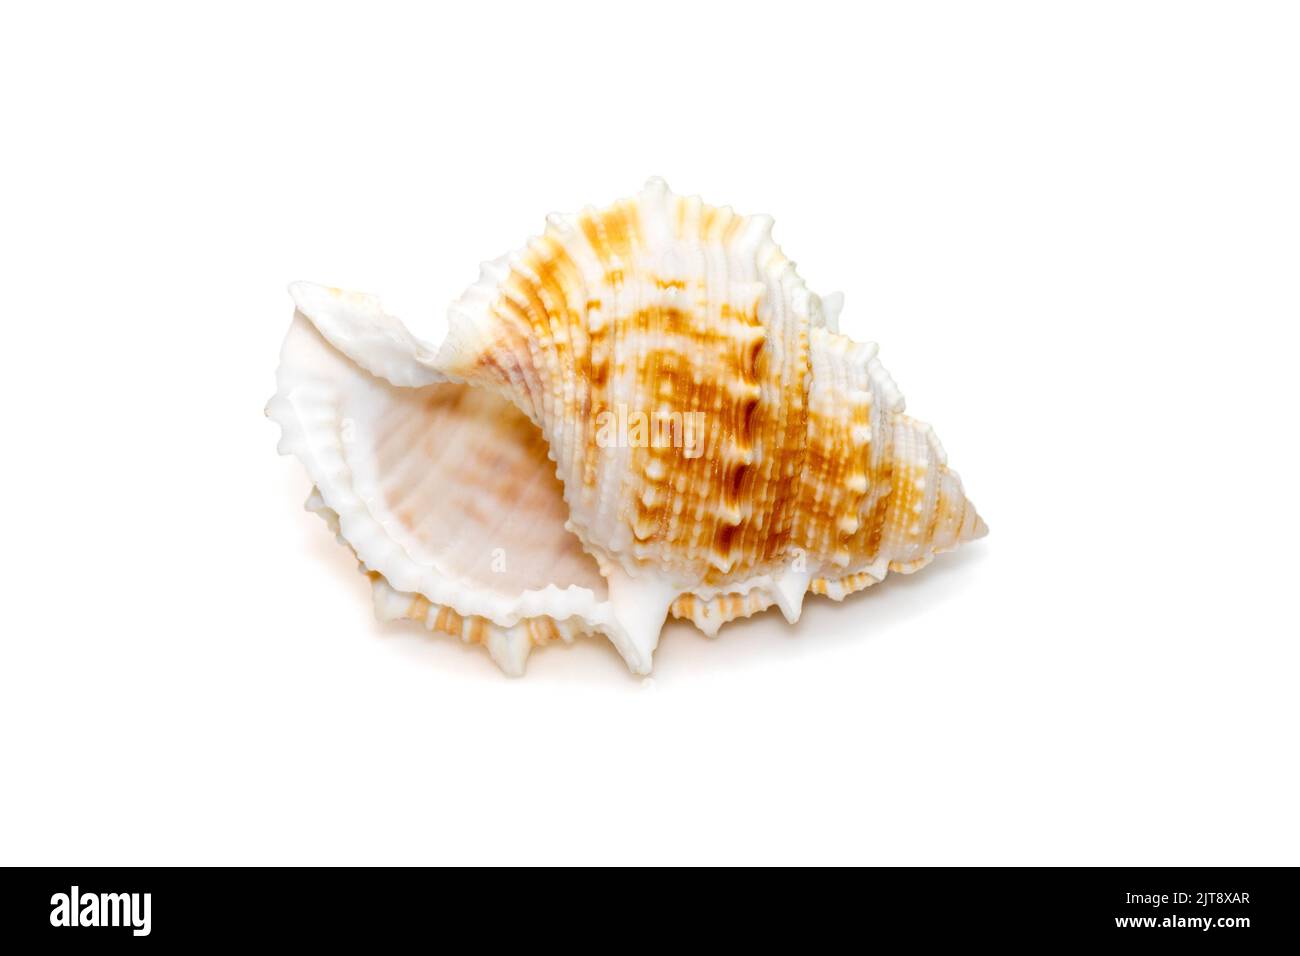 La conchiglia di mare di bufonaria rana è una specie di lumaca di mare, un molluschi gasteropodi della famiglia Bursidae, le conchiglie di rana isolate sulla schiena bianca Foto Stock